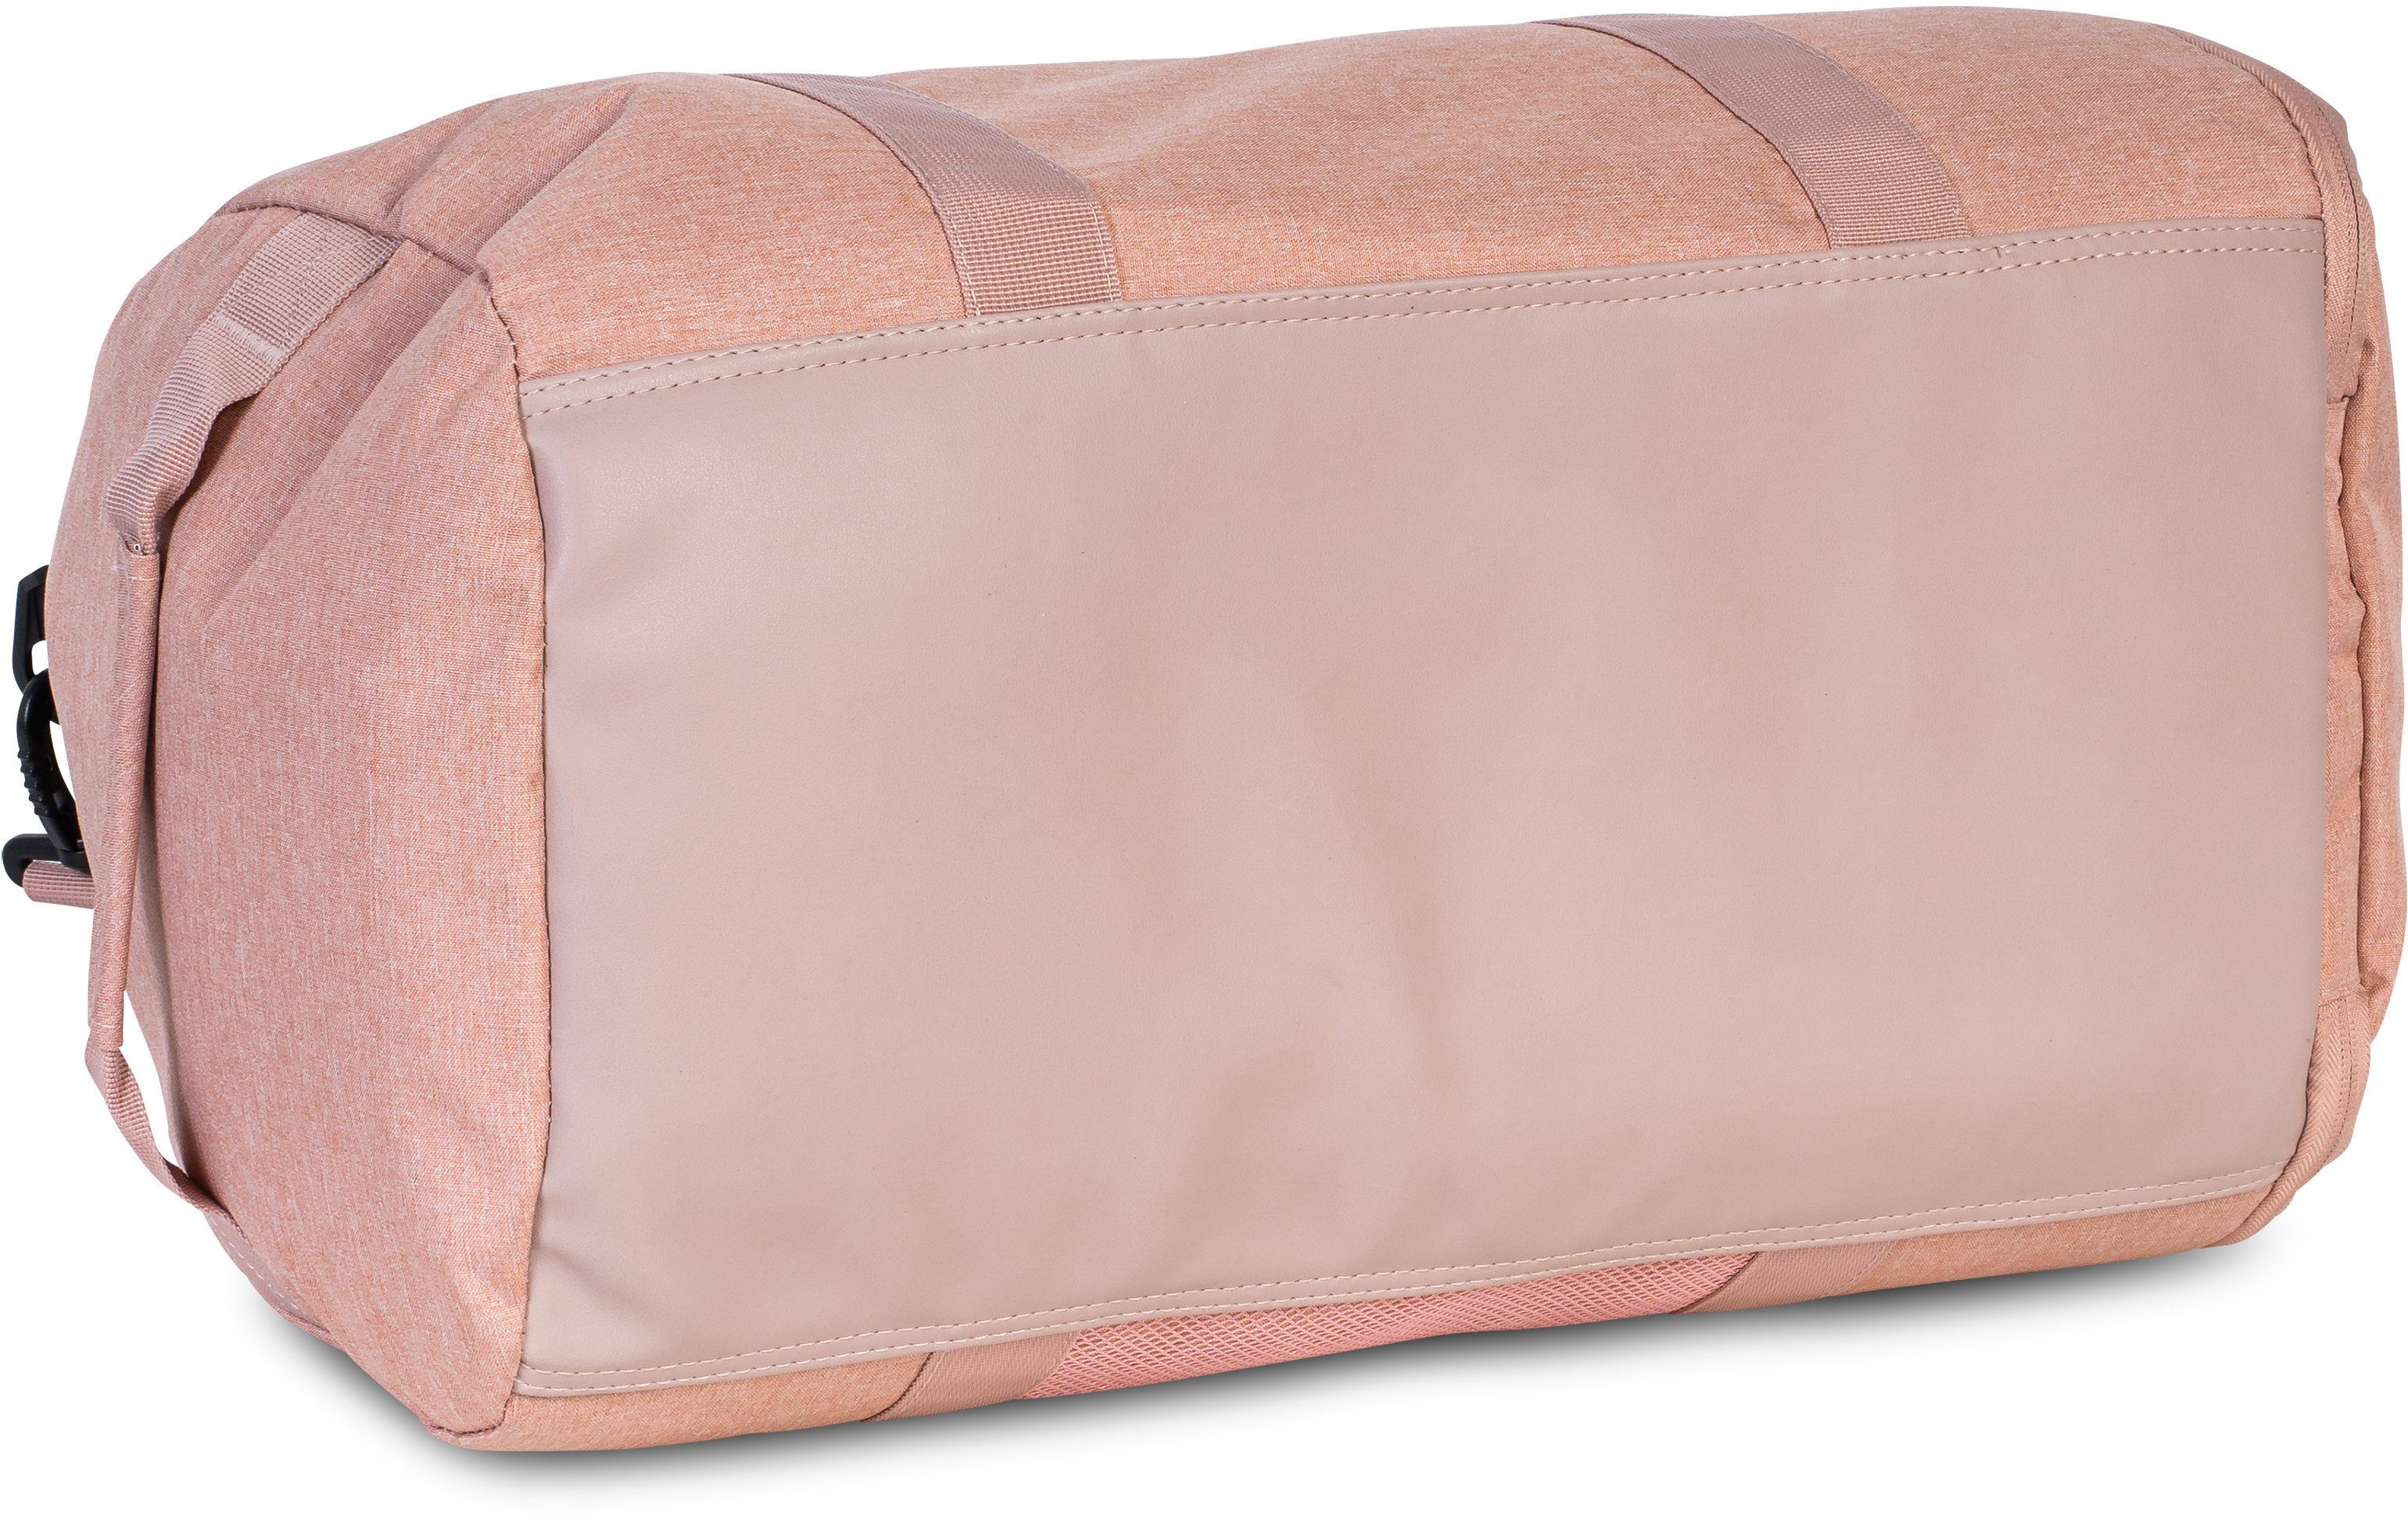 Bench. Reisetasche Sporttasche, rosa-rot 30 L